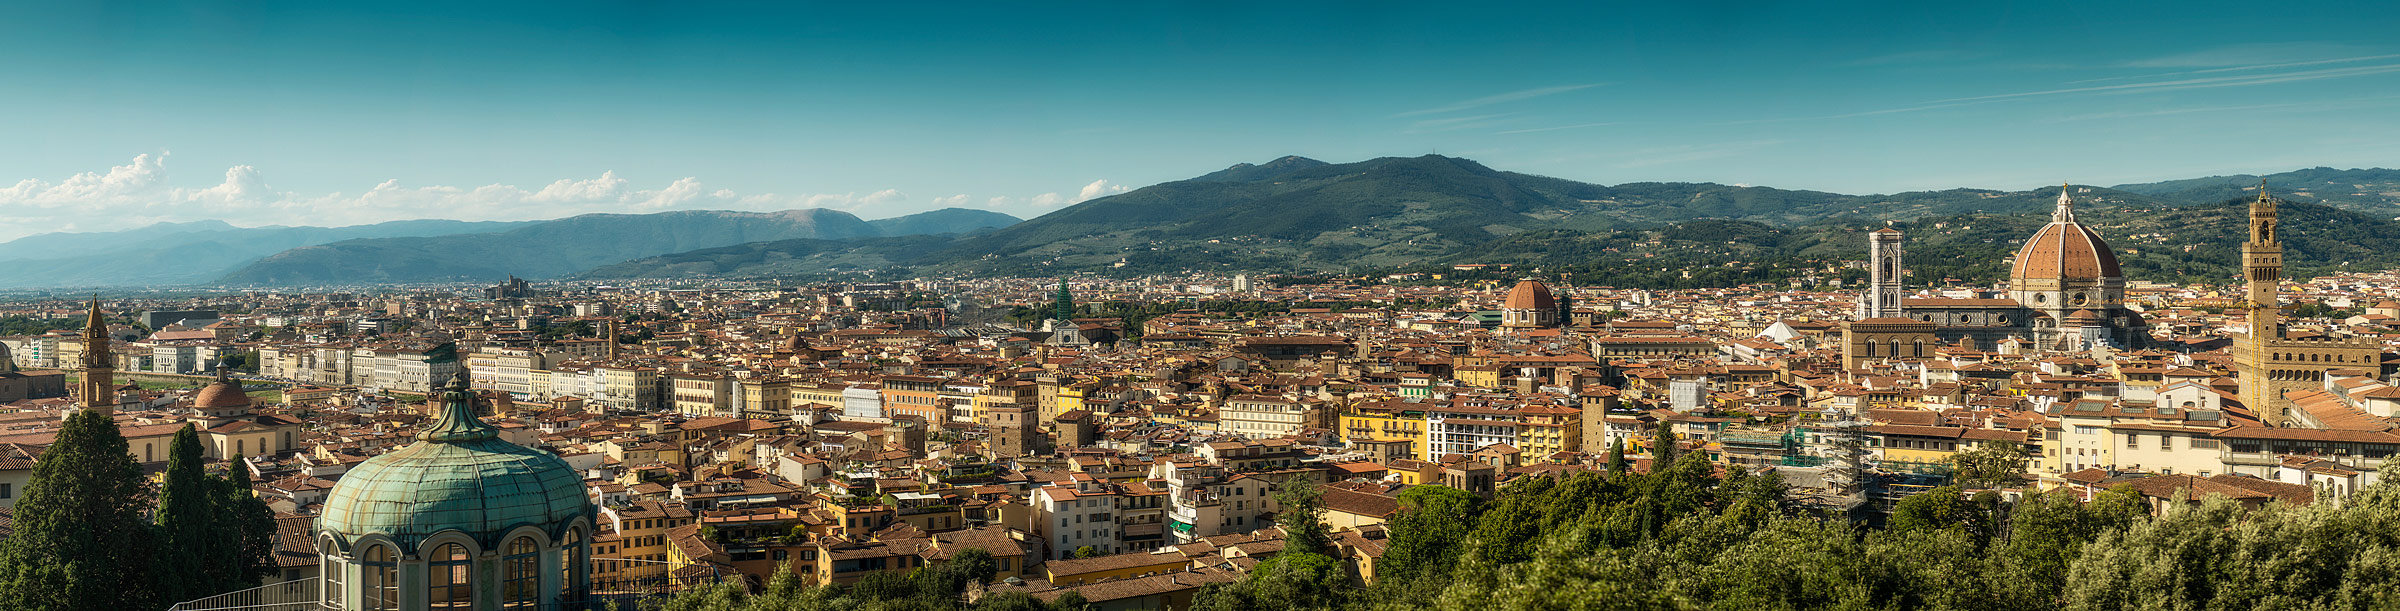 Firenze_Panorama1